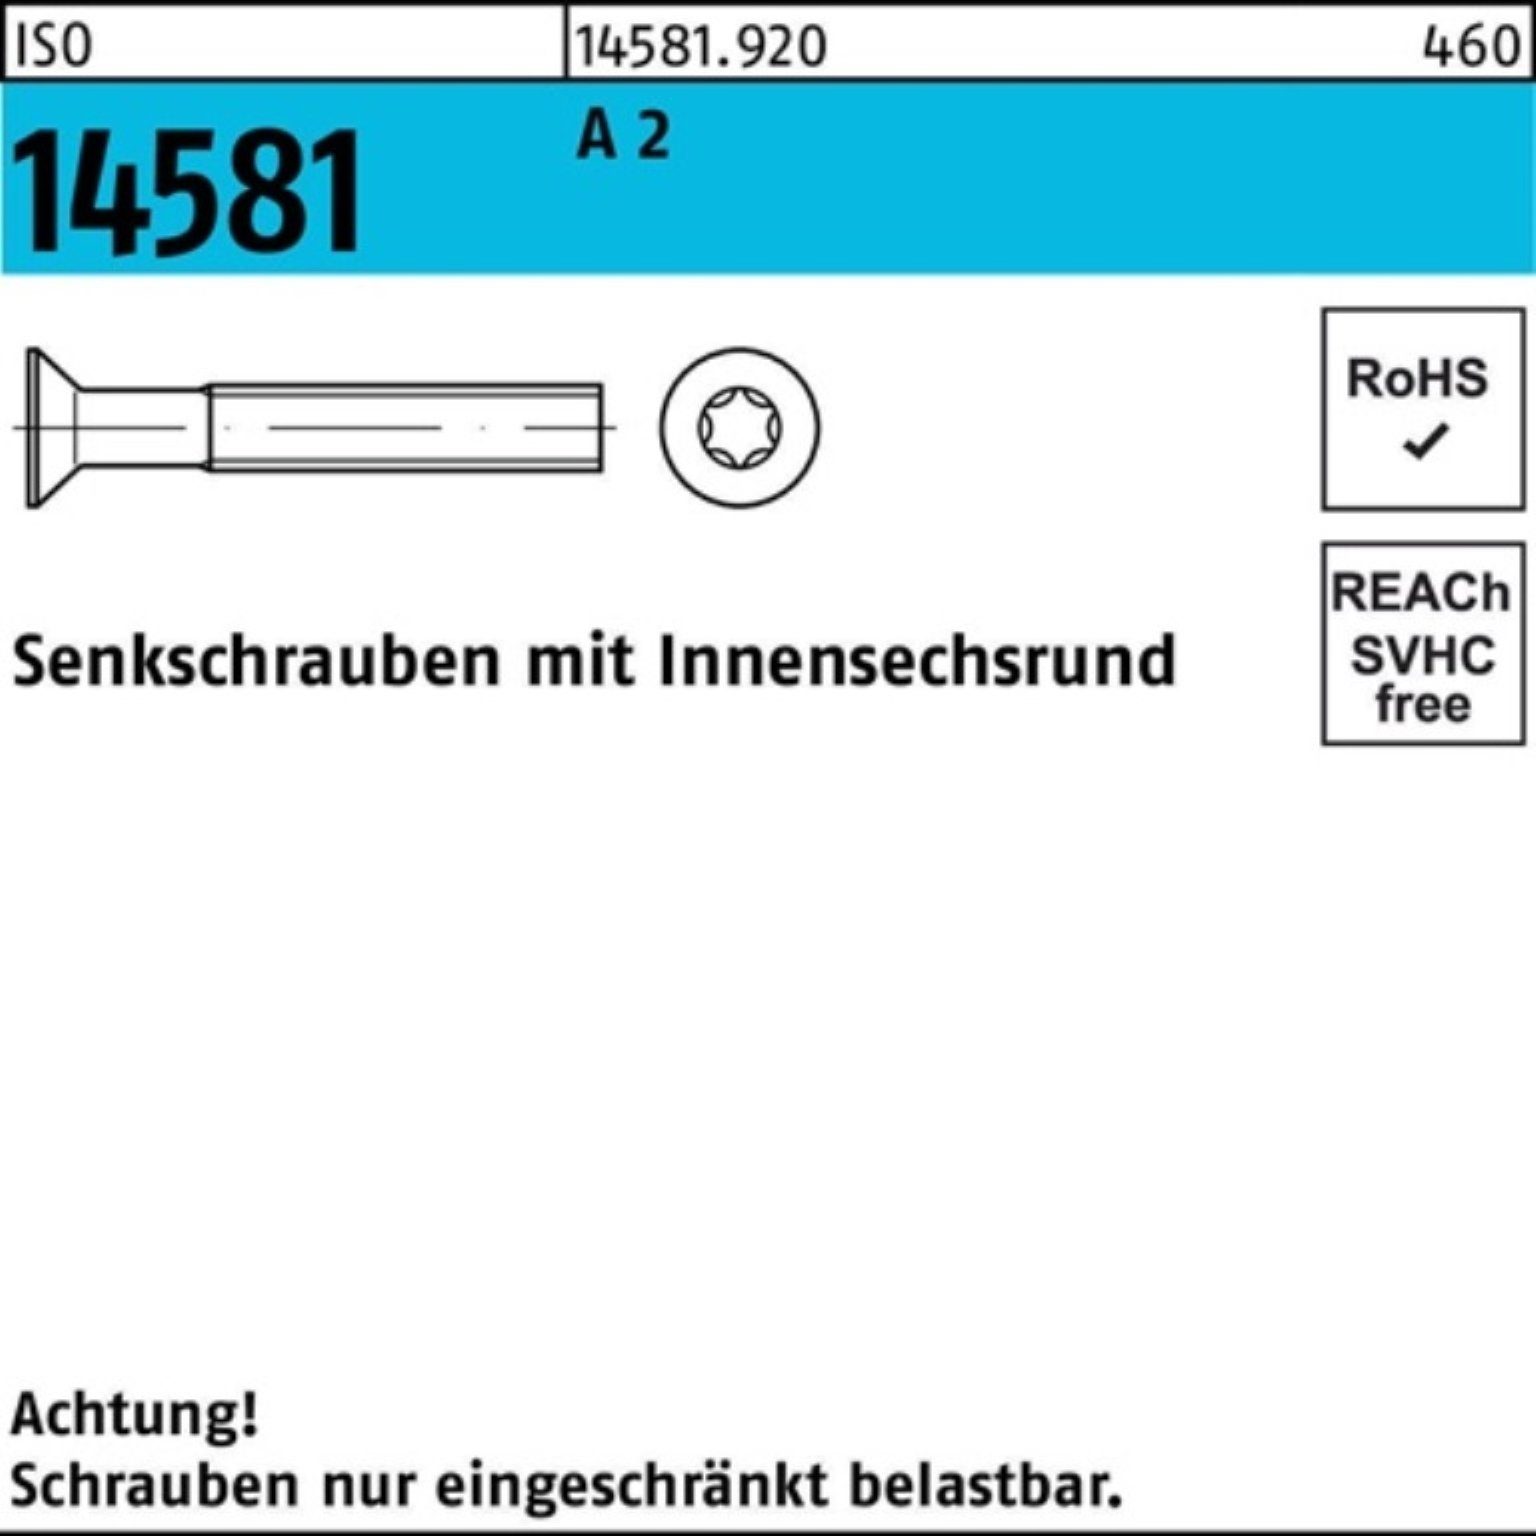 Reyher Senkschraube 2 ISO 14 M2x 14581 T6 2000 A ISO ISR Senkschraube 4 Stück Pack 2000er